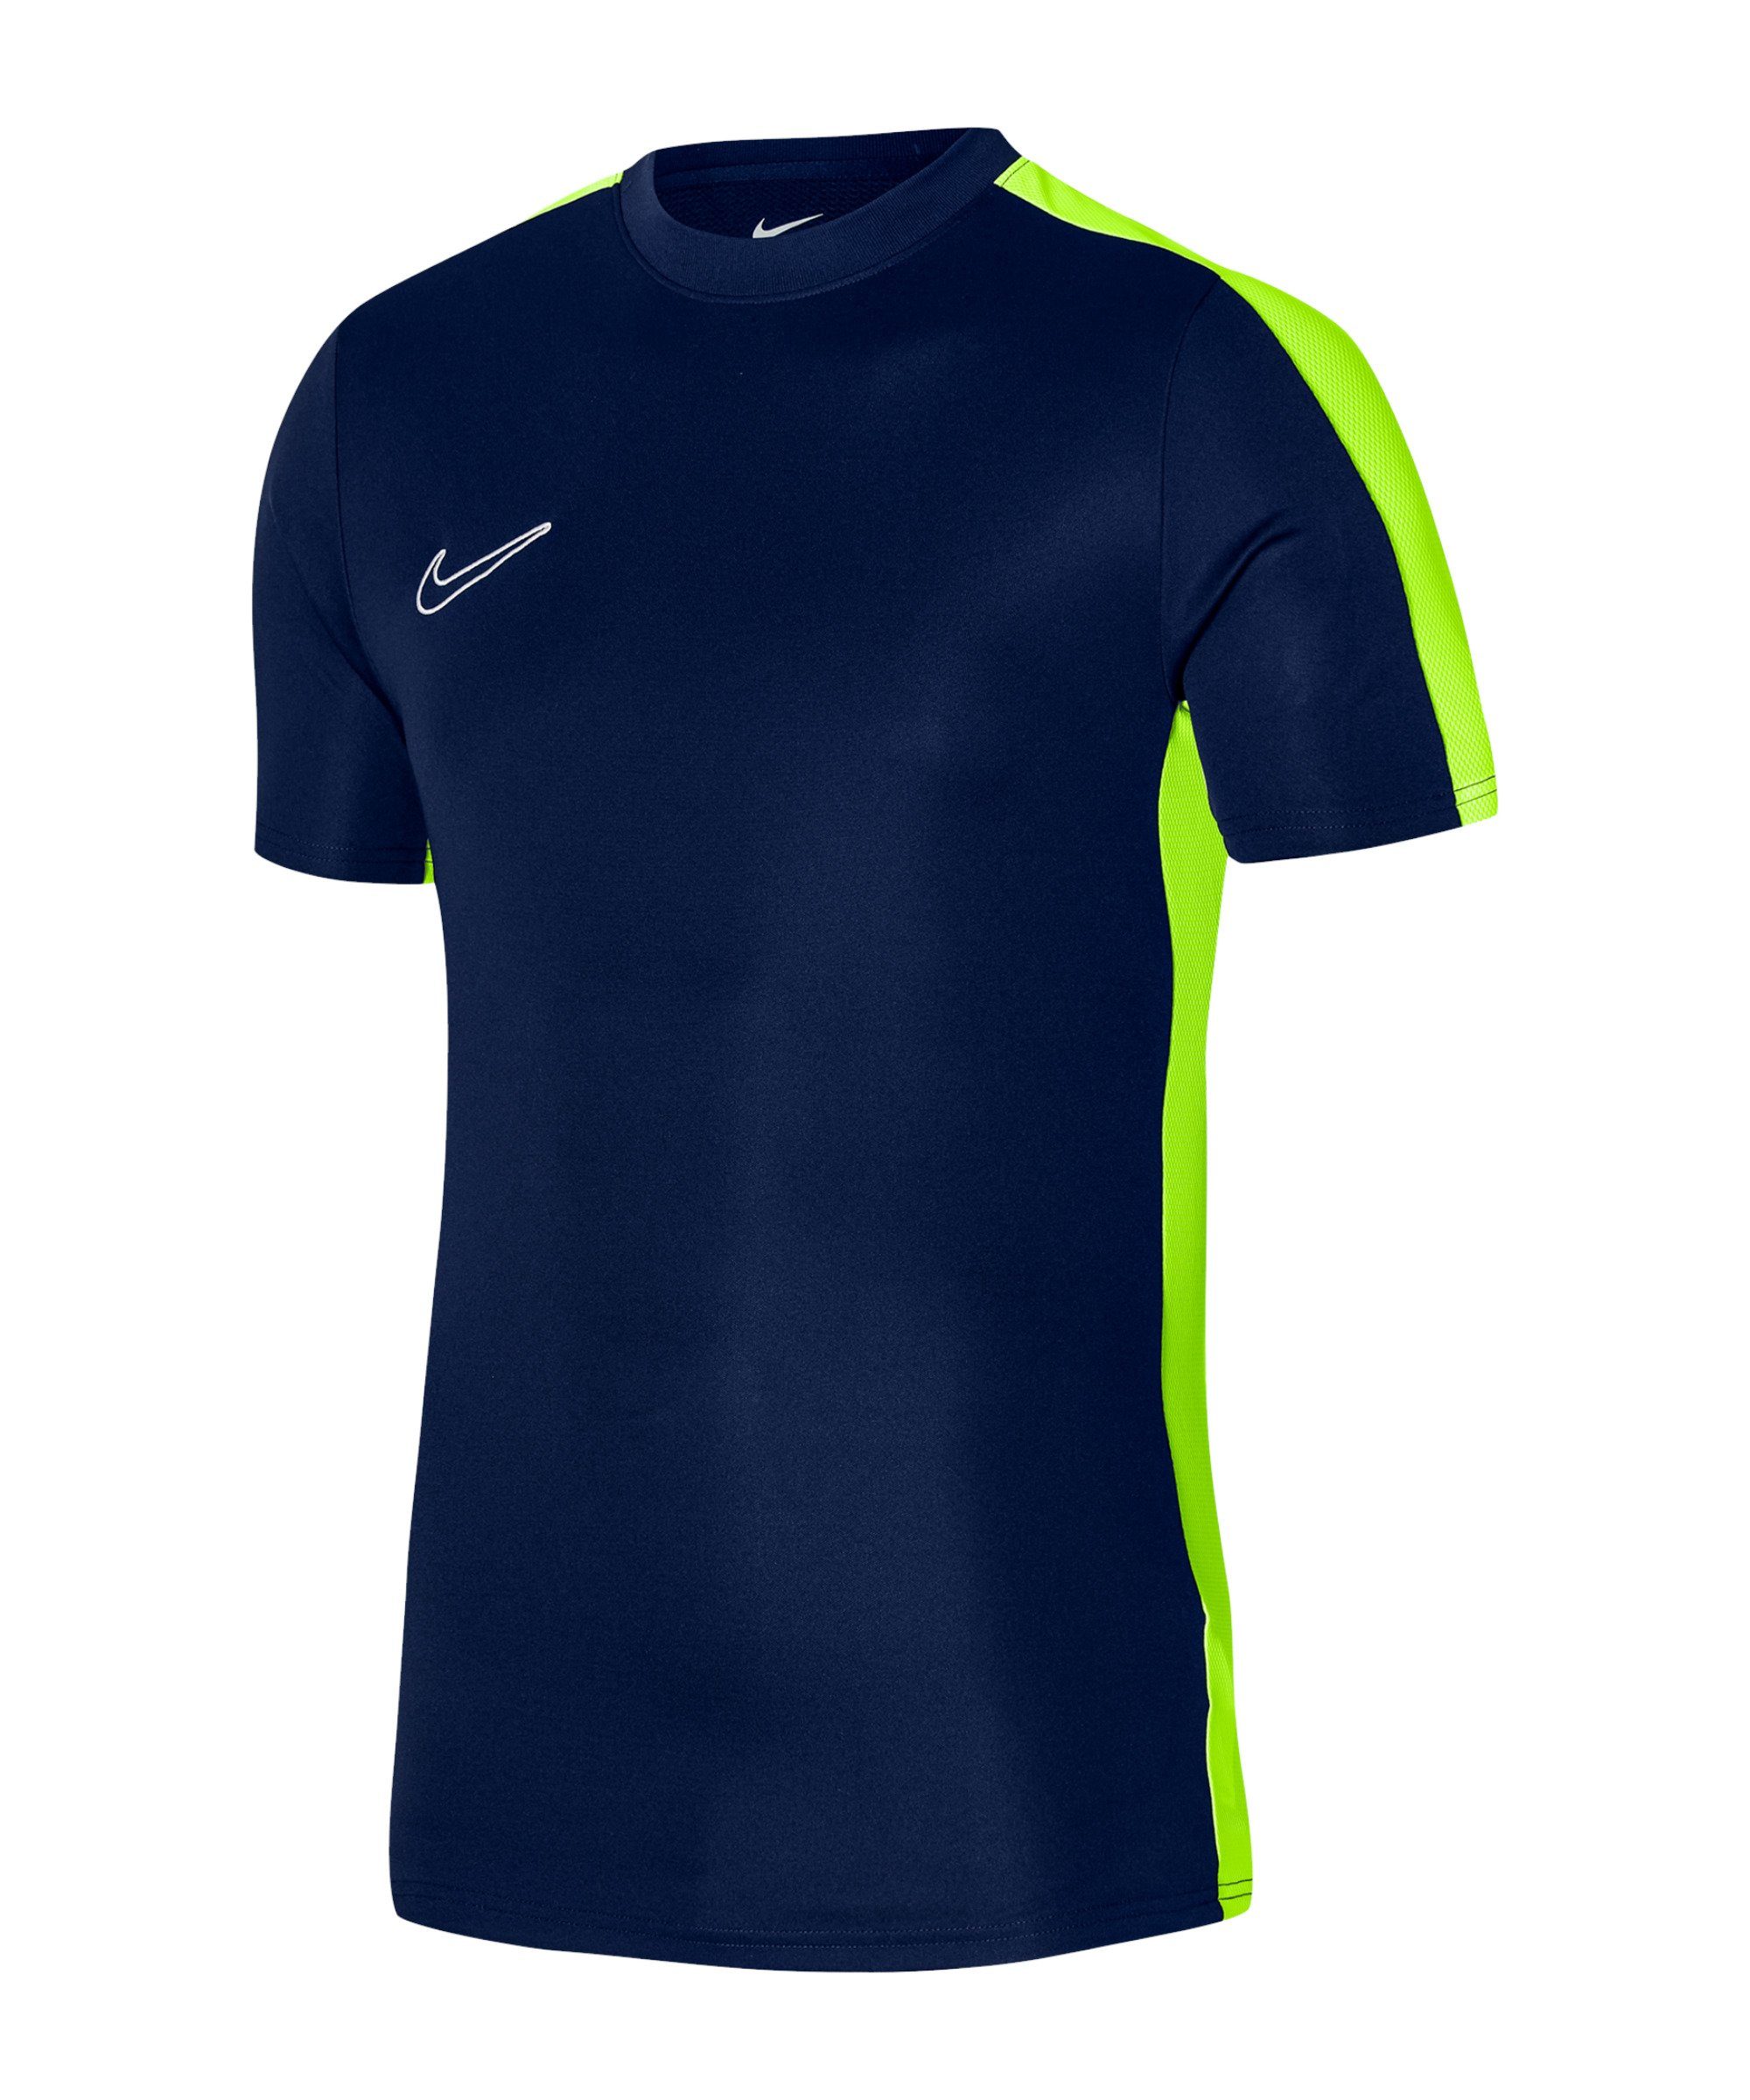 blaugrauweiss 23 Academy Kids Trainingsshirt T-Shirt default Nike